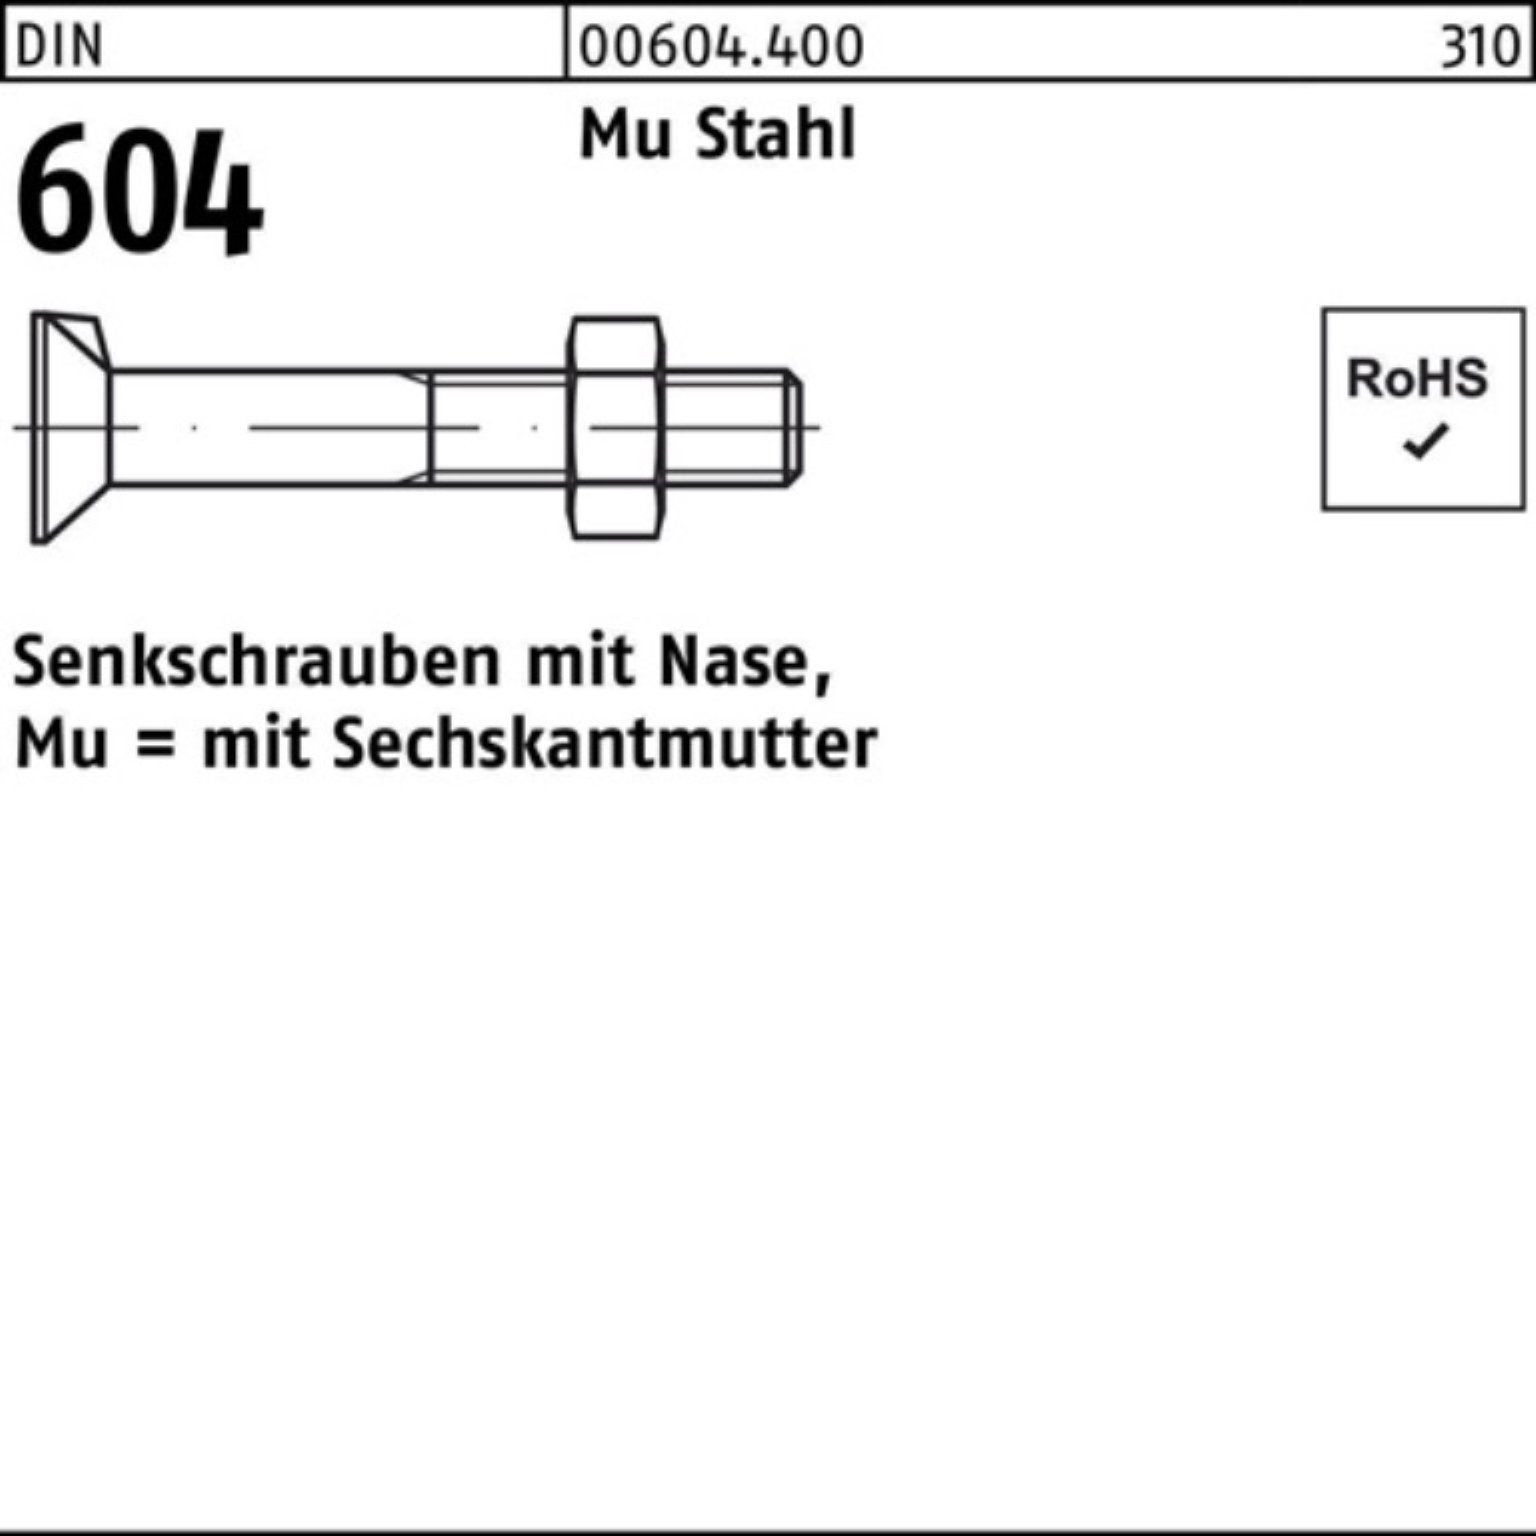 Reyher Senkschraube 100er Pack Senkschraube DIN 604 Nase/6-ktmutter M12x 110 Mu Stahl 4.6